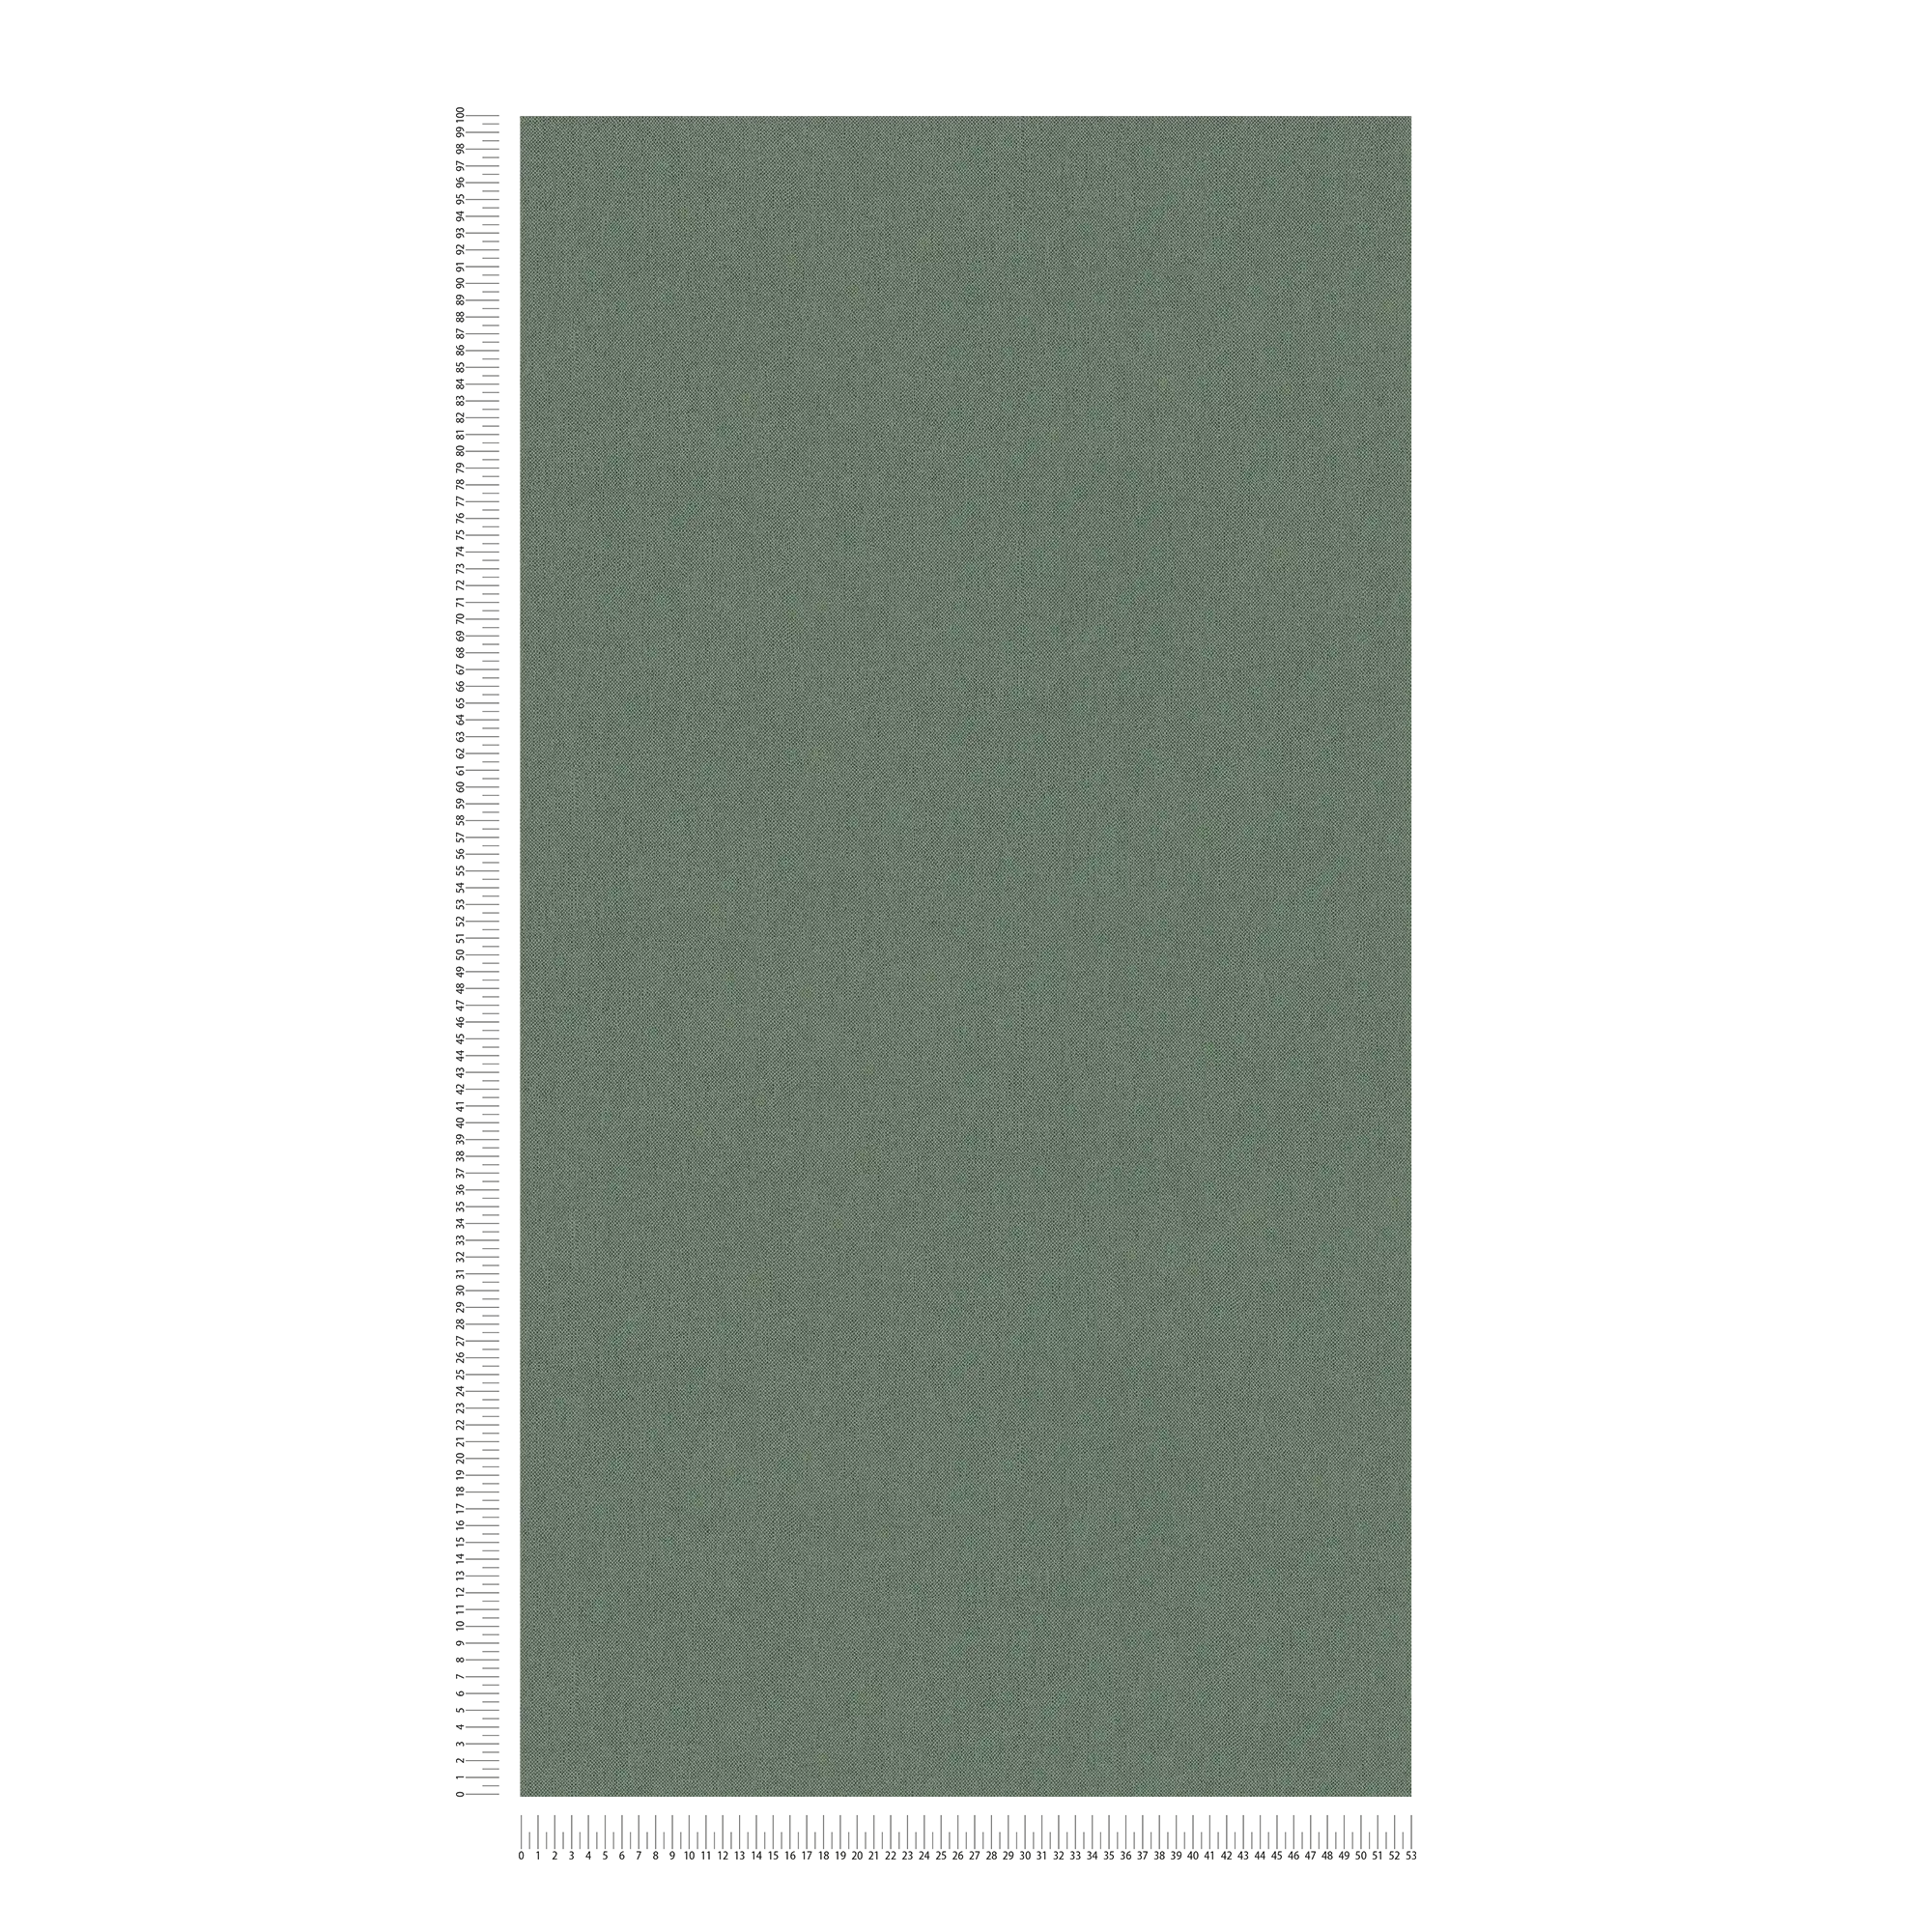             Einfarbige Tapete Tannengrün mit Textilstruktur – Grün
        